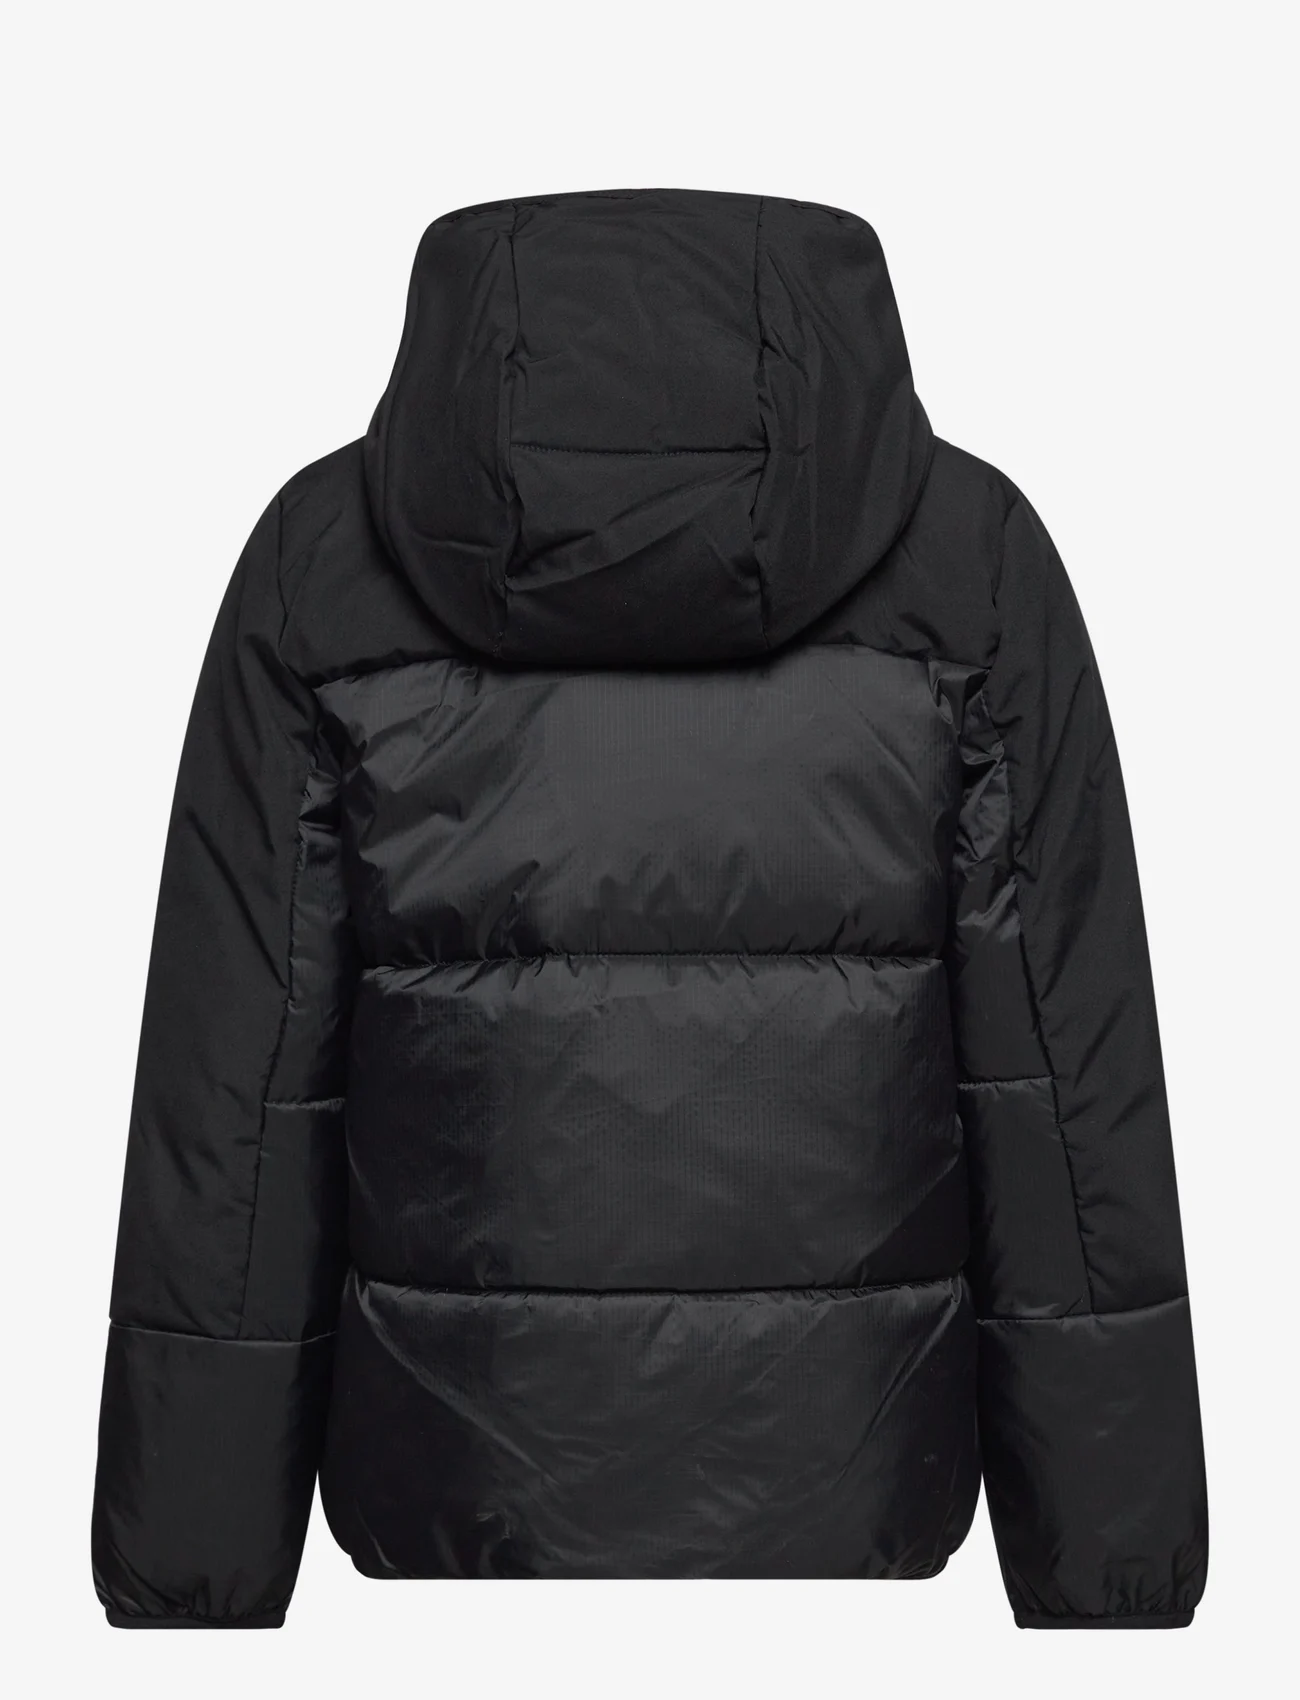 Champion - Hooded Jacket - geïsoleerde jassen - black beauty - 1